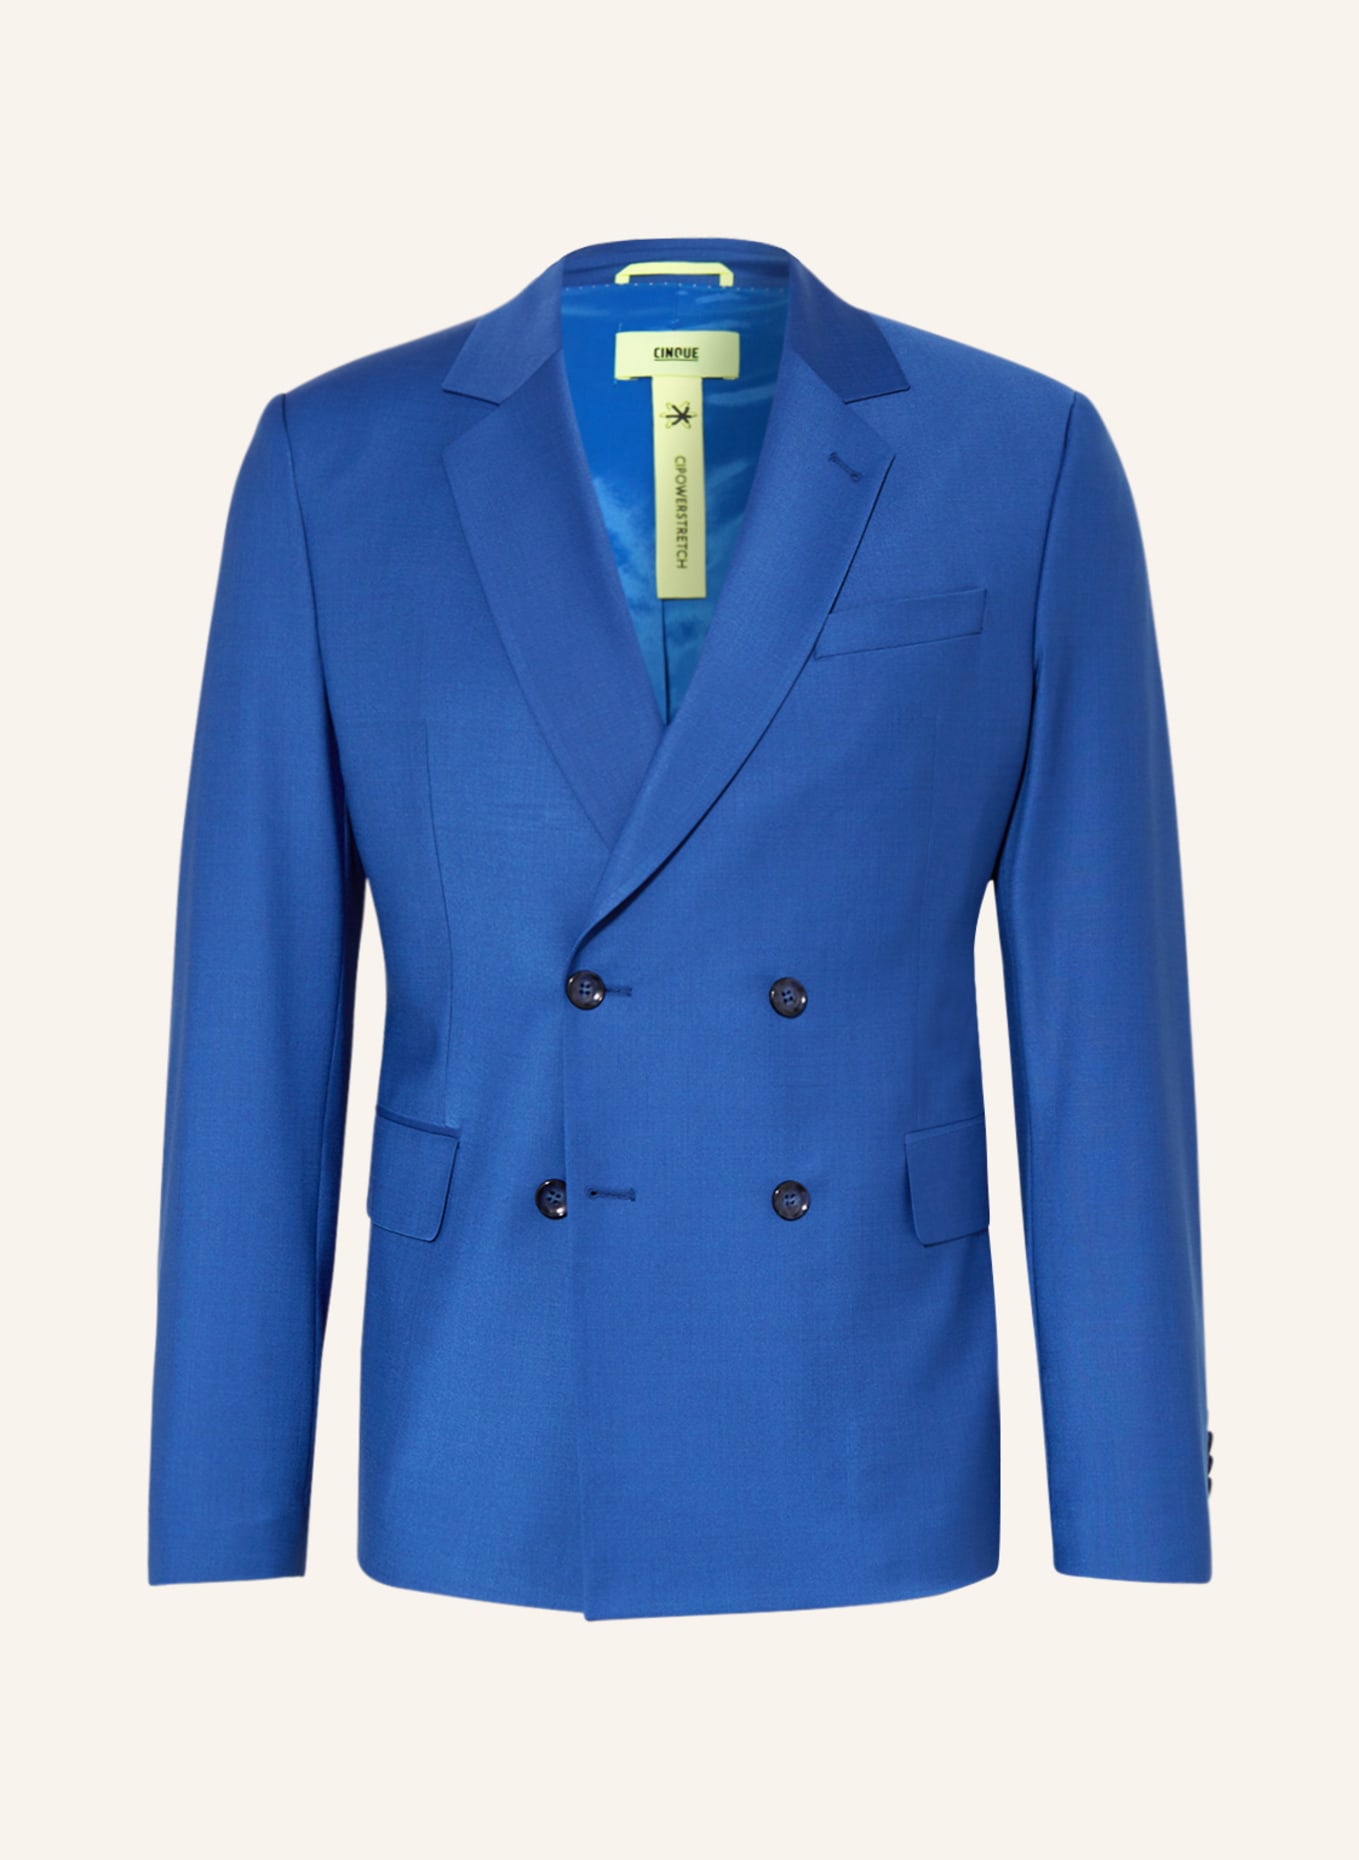 CINQUE Suit jacket CITWINGO regular fit, Color: 661 (Image 1)